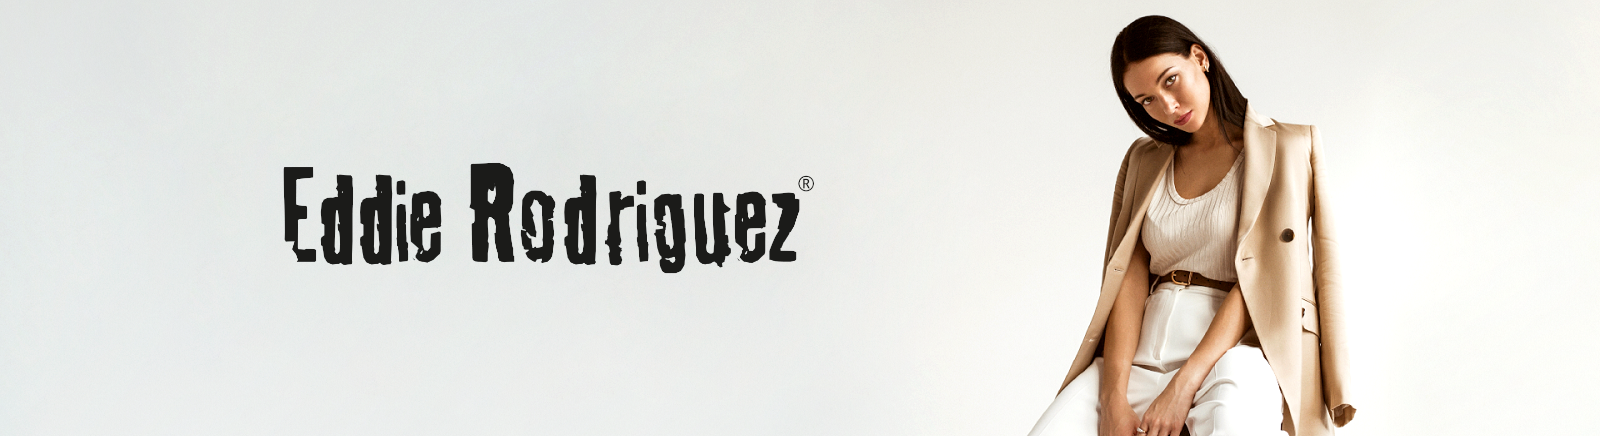 Juppen: Eddie Rodriguez Schuhpflege & Schuhzubehör online kaufen online shoppen